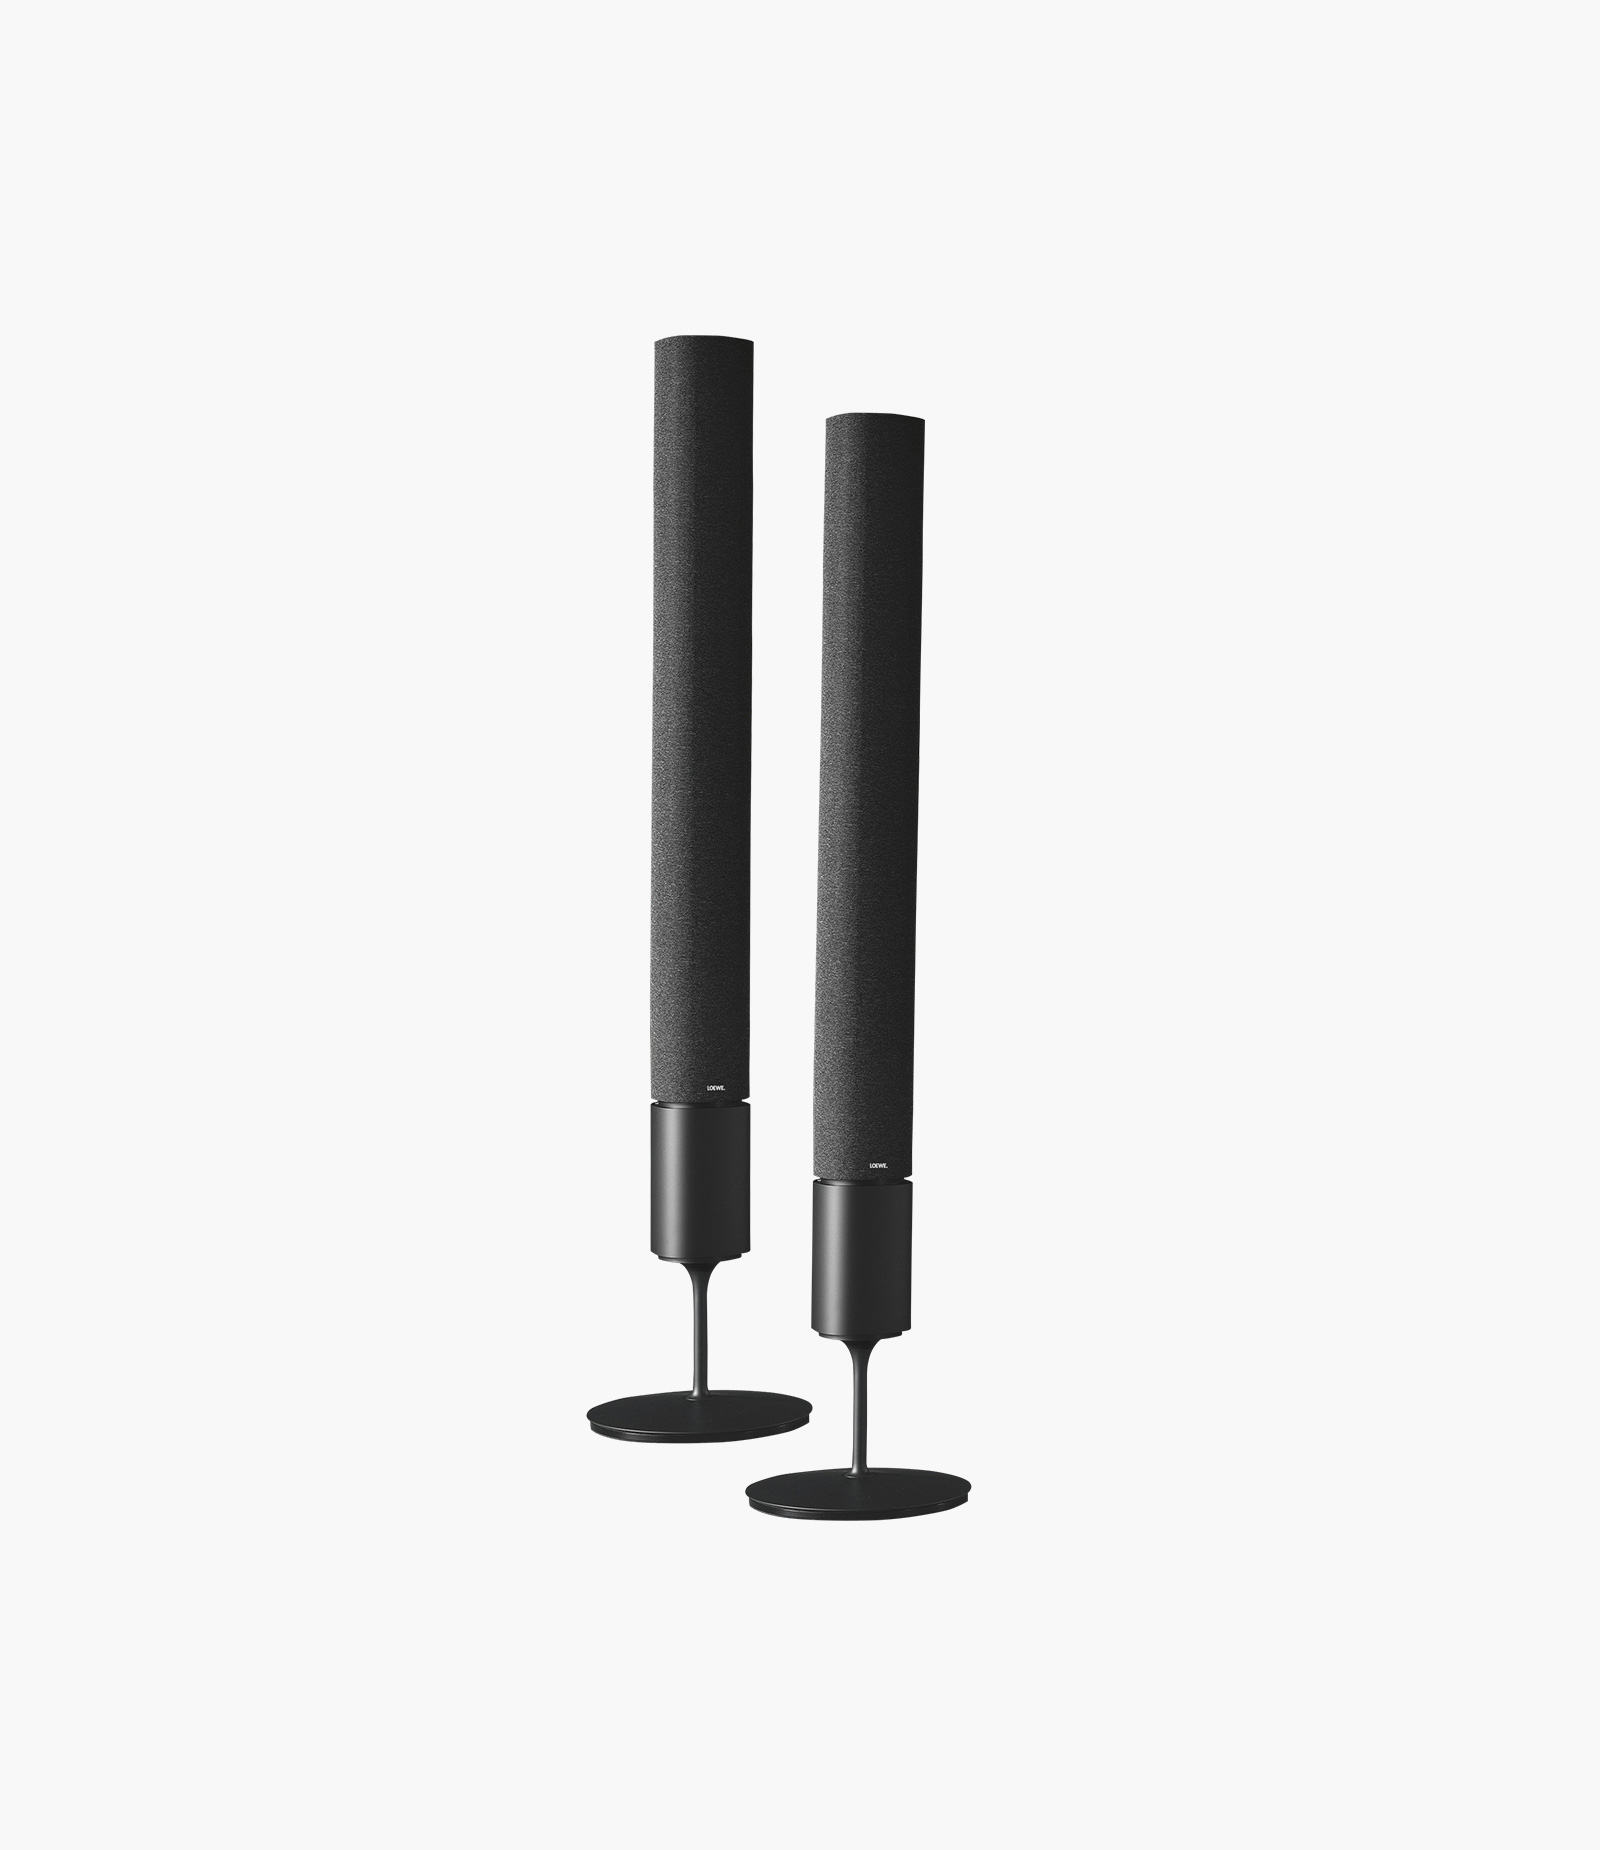 Loewe Klang 5 Wireless Active Speakers Black